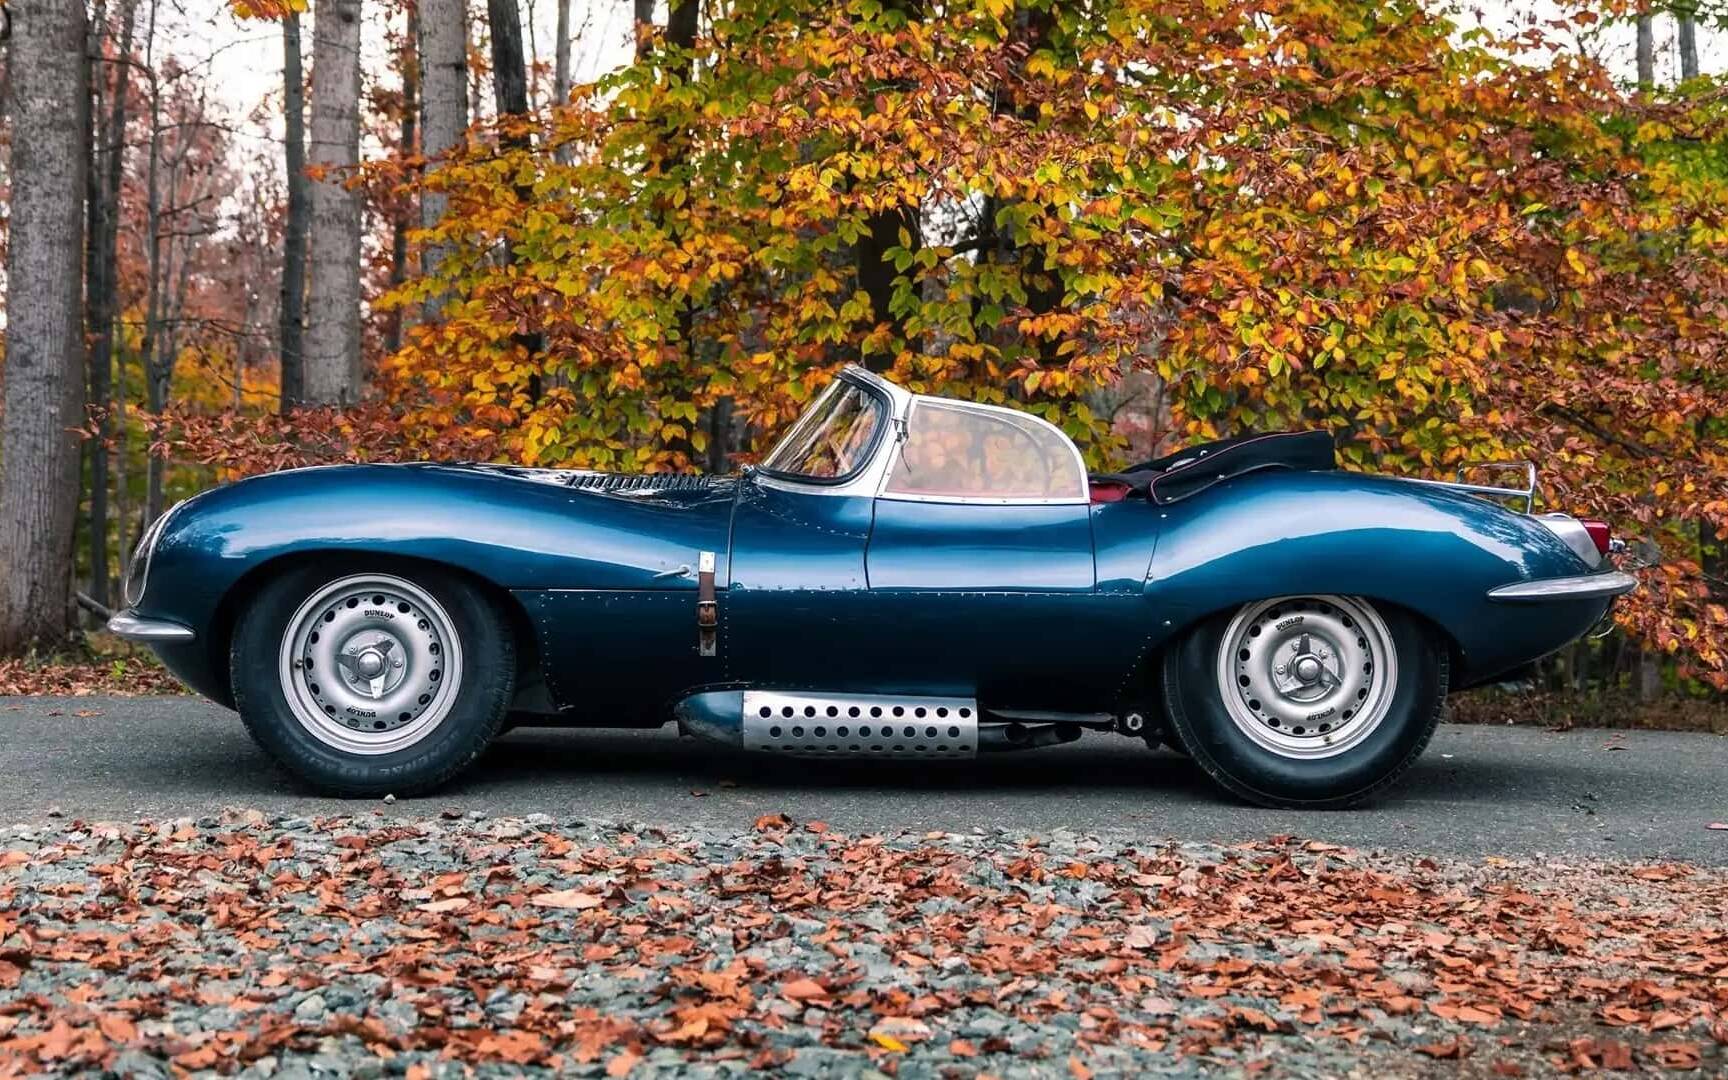 vendre - Cette Jaguar XKSS 1957 pourrait se vendre pour plus de 18 M$ 581469-cette-jaguar-xkss-1957-pourrait-se-vendre-pour-18-m